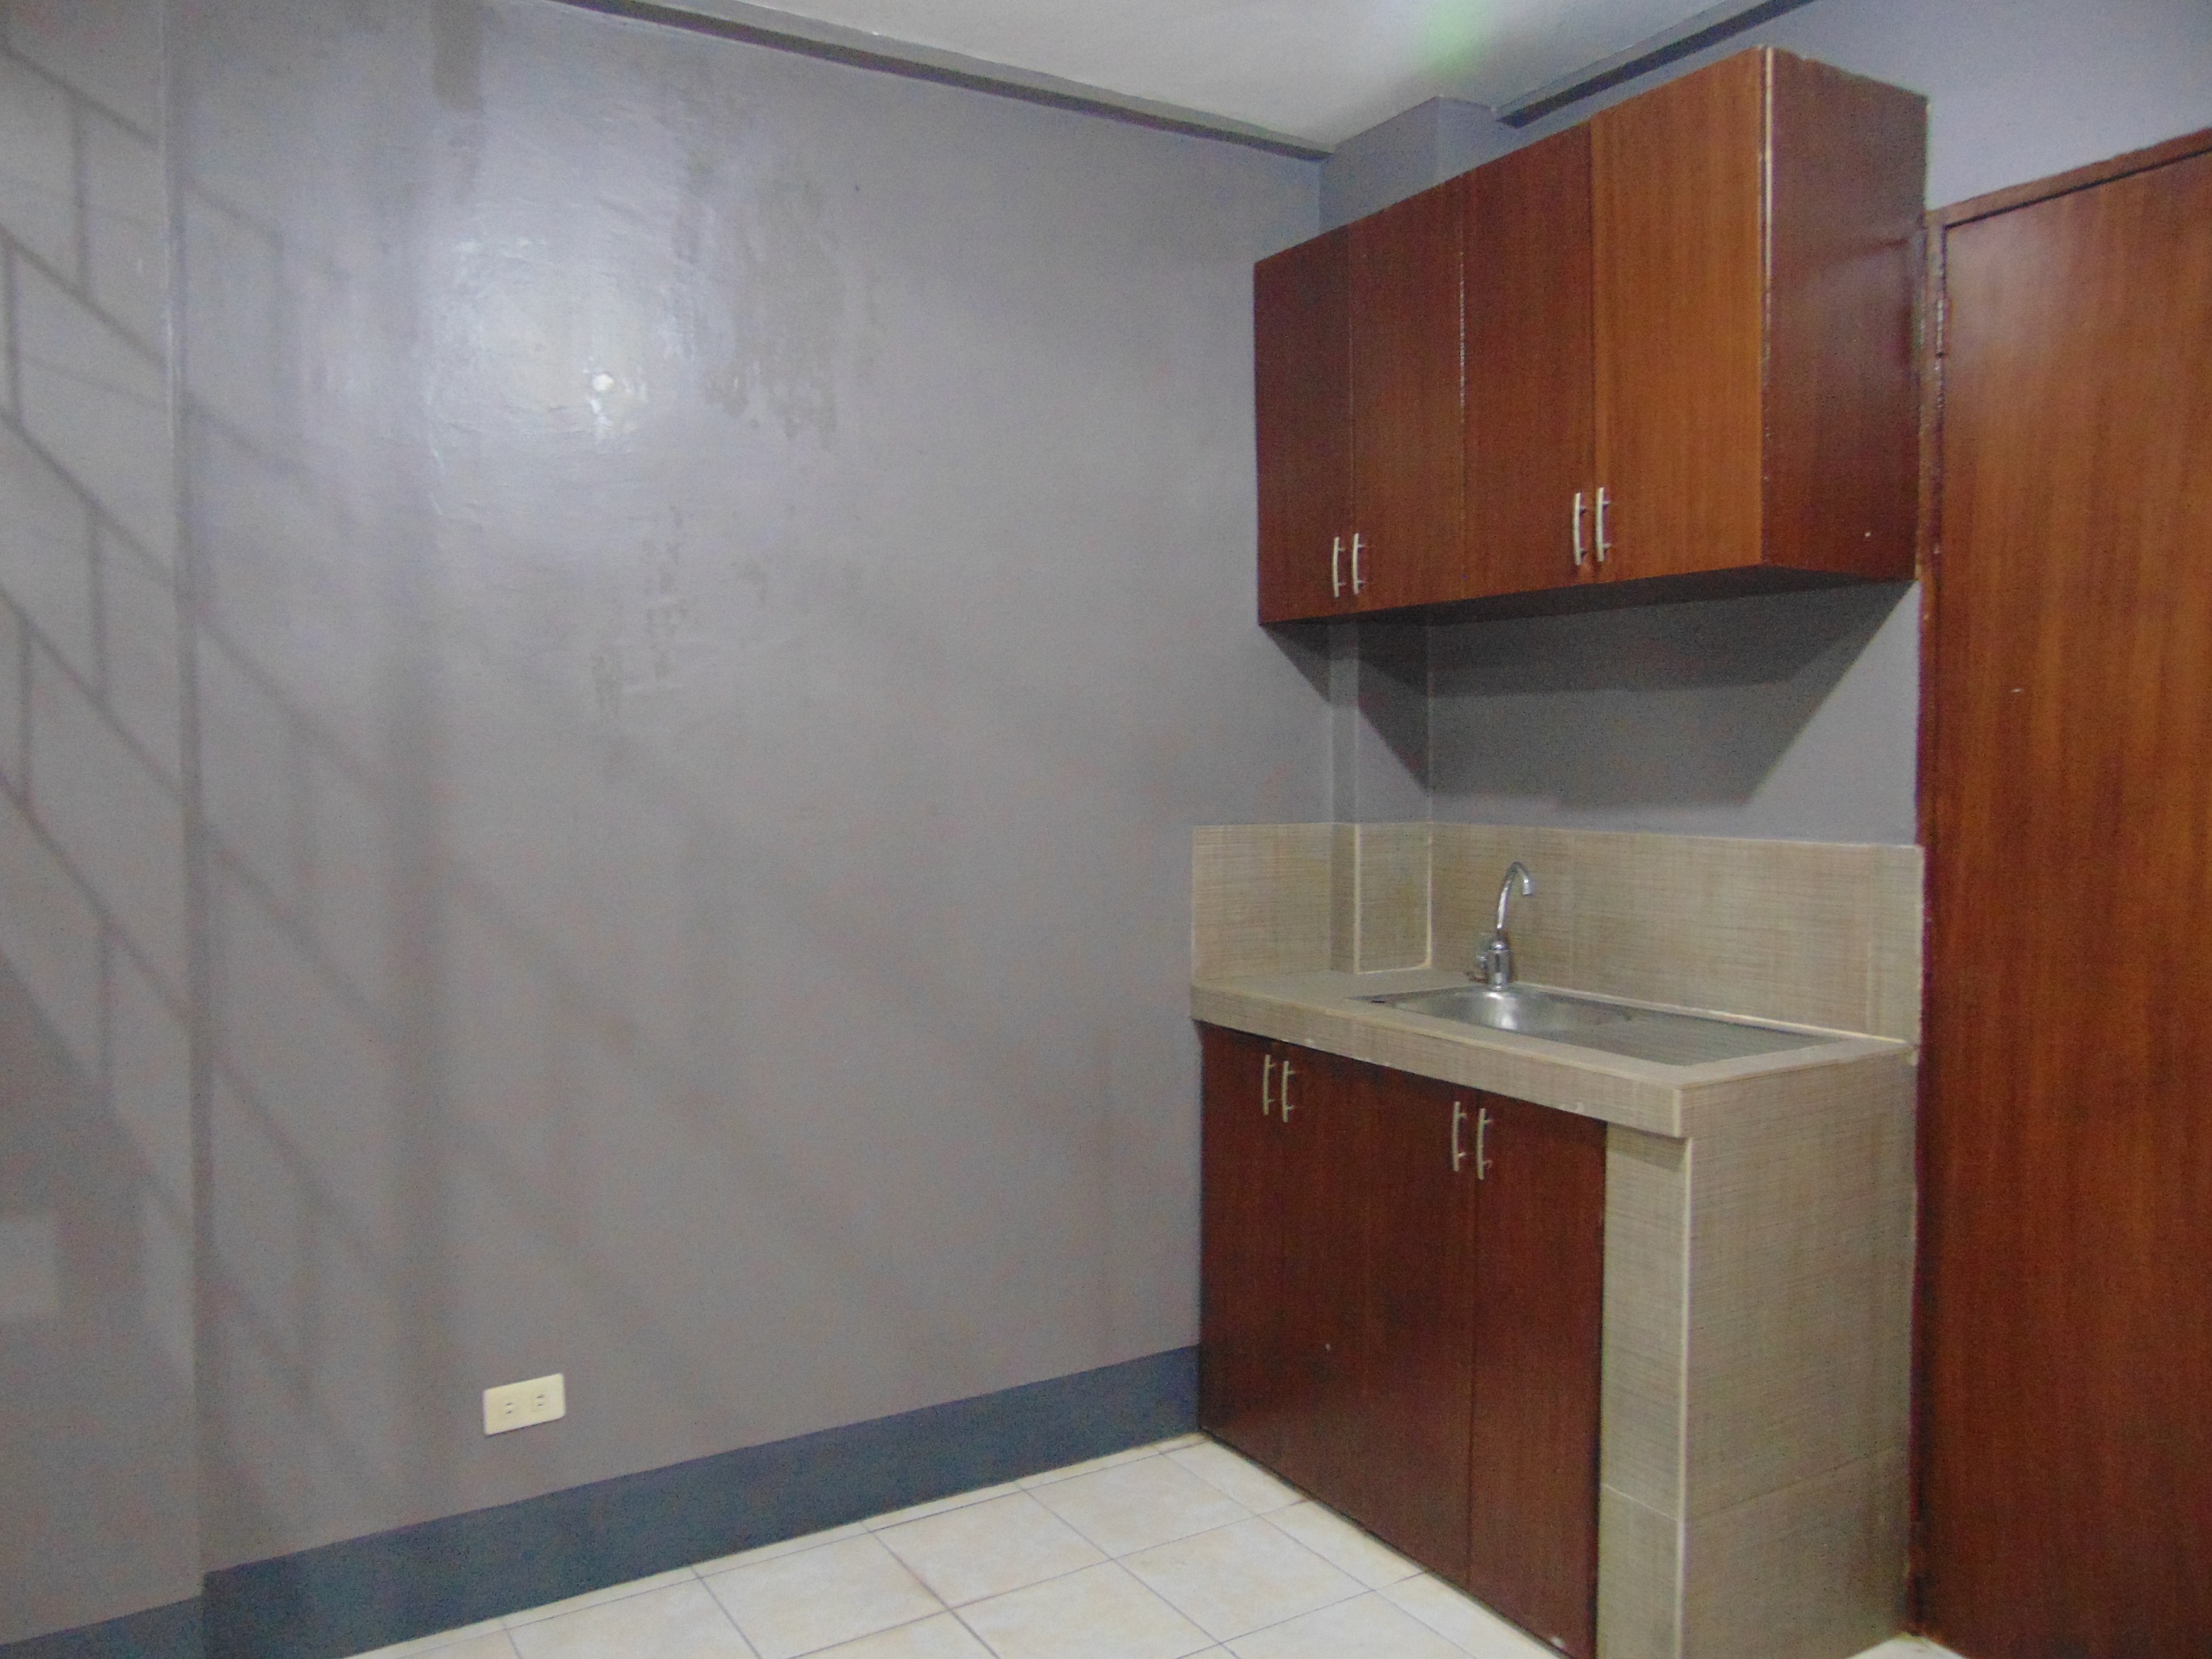 2-bedrooms-apartment-located-near-v-rama-cebu-city